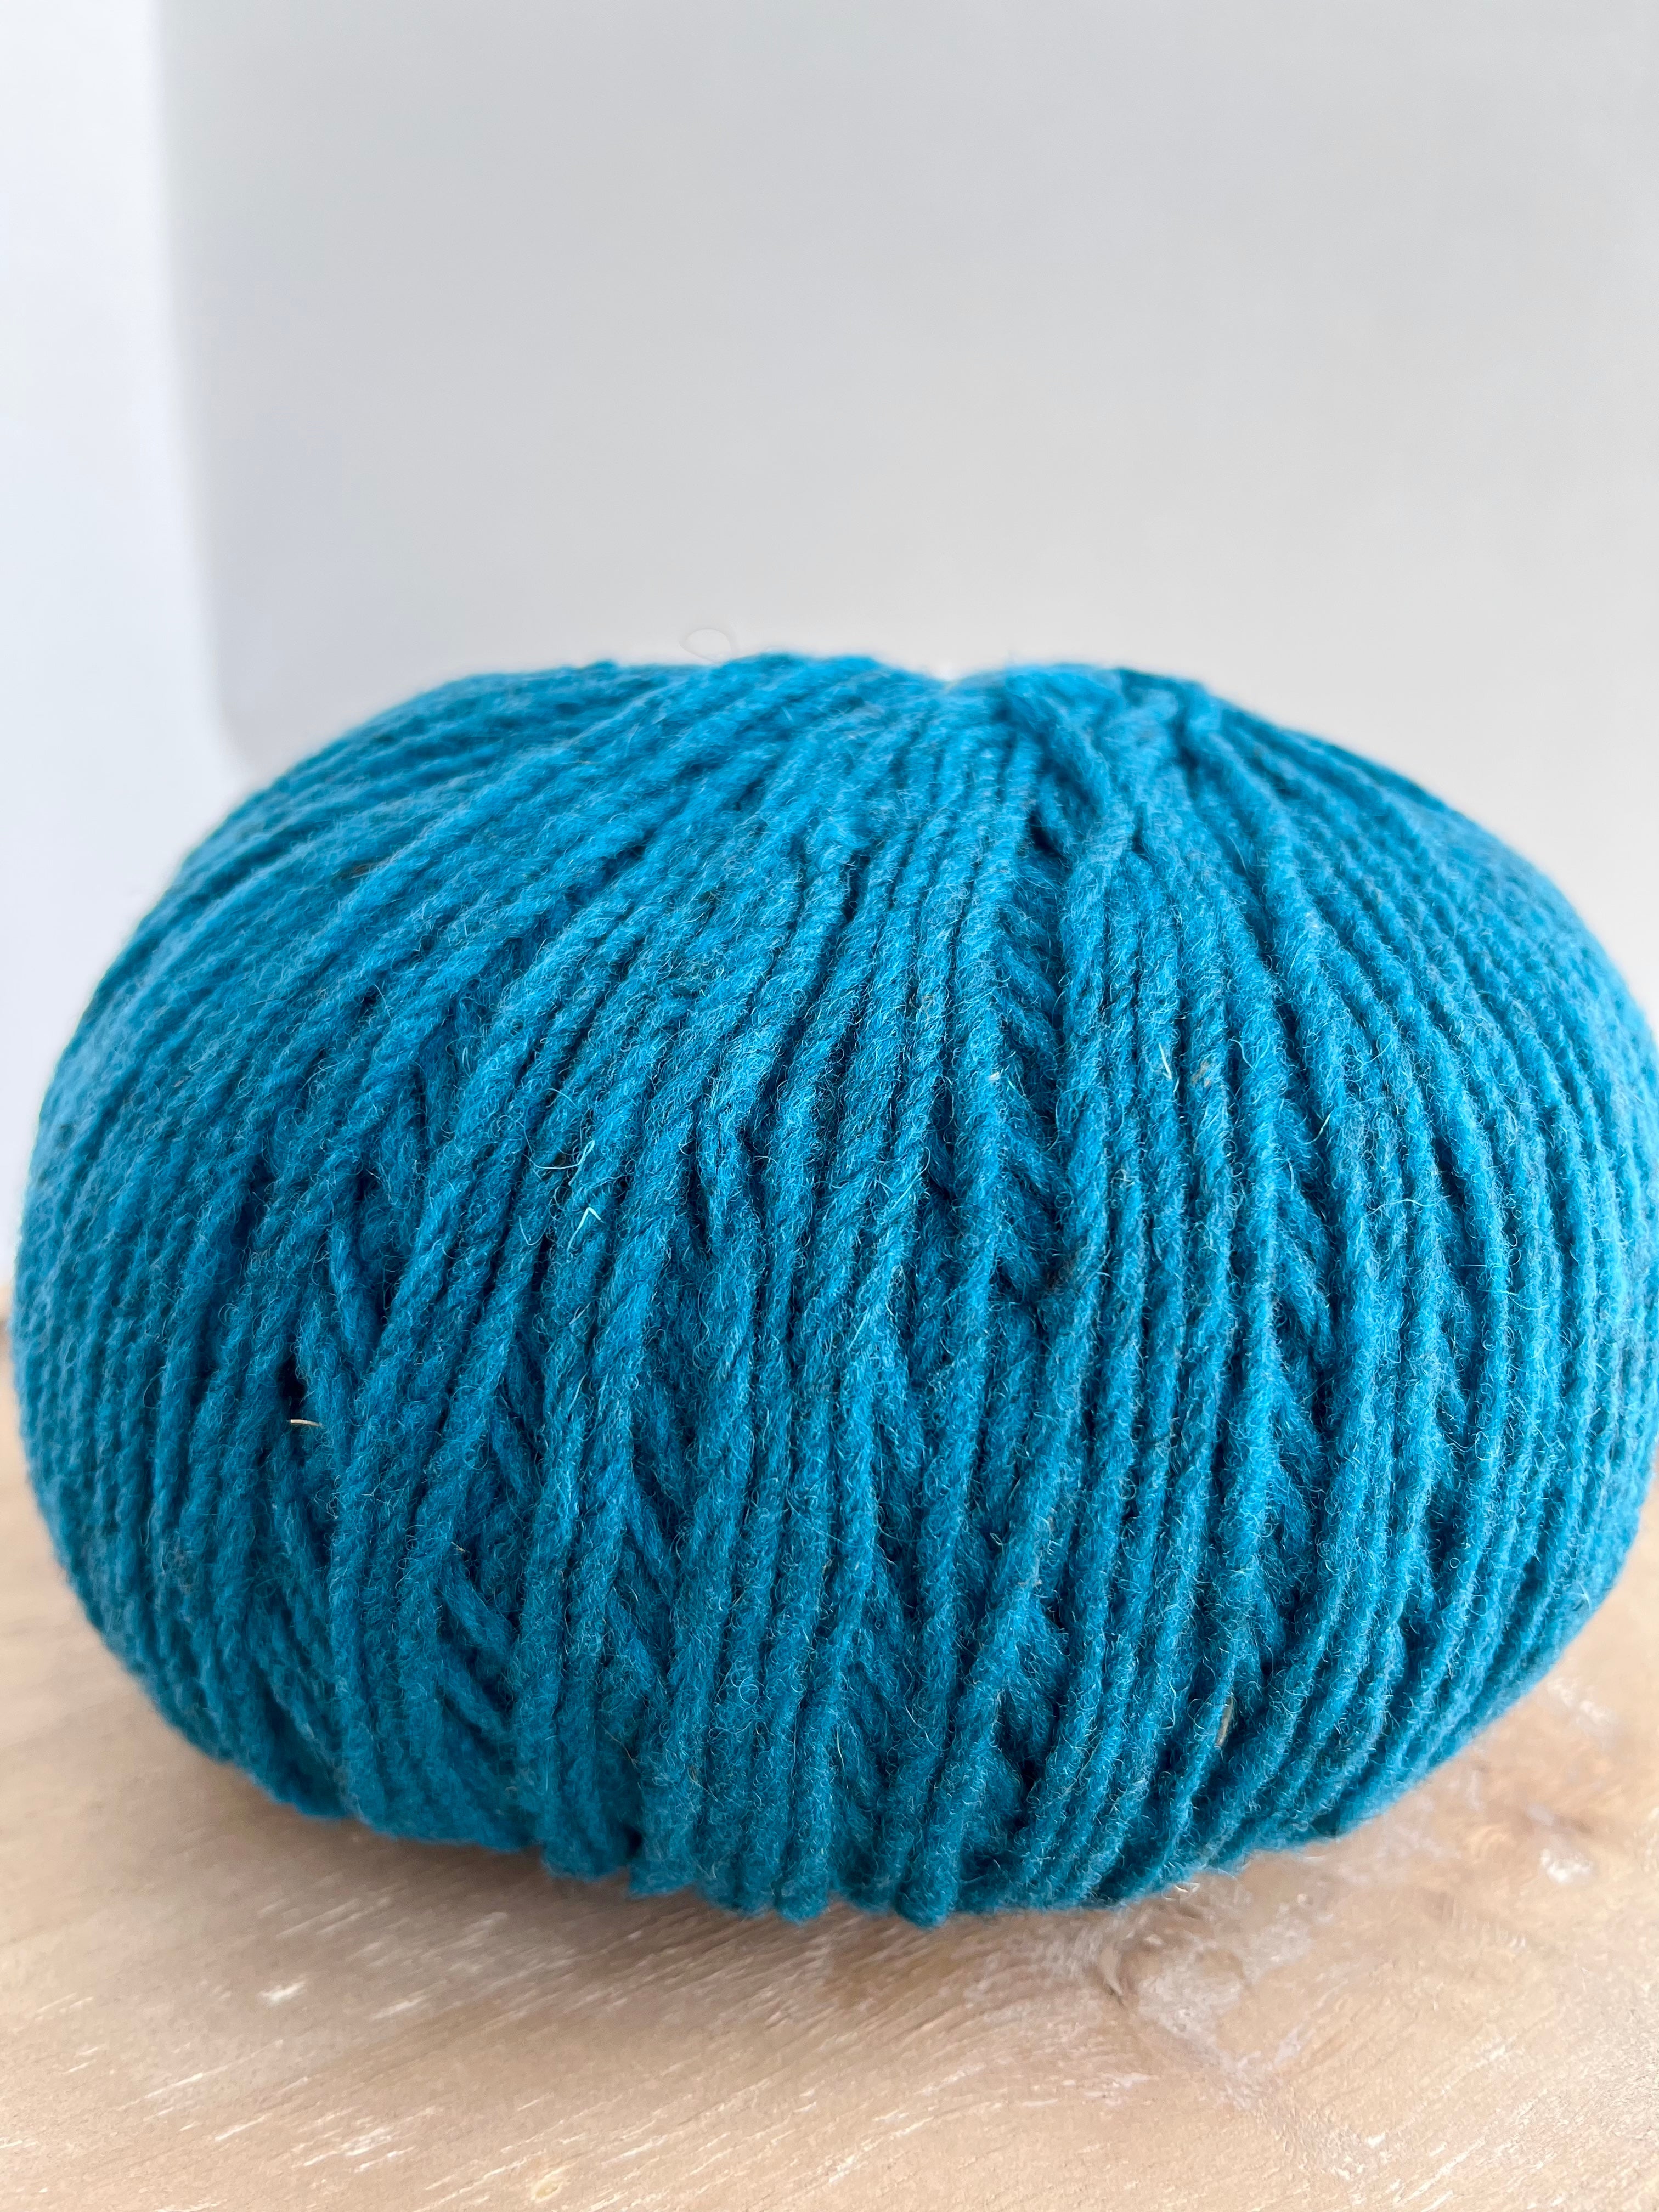 Mota yarn from WoolDreamers